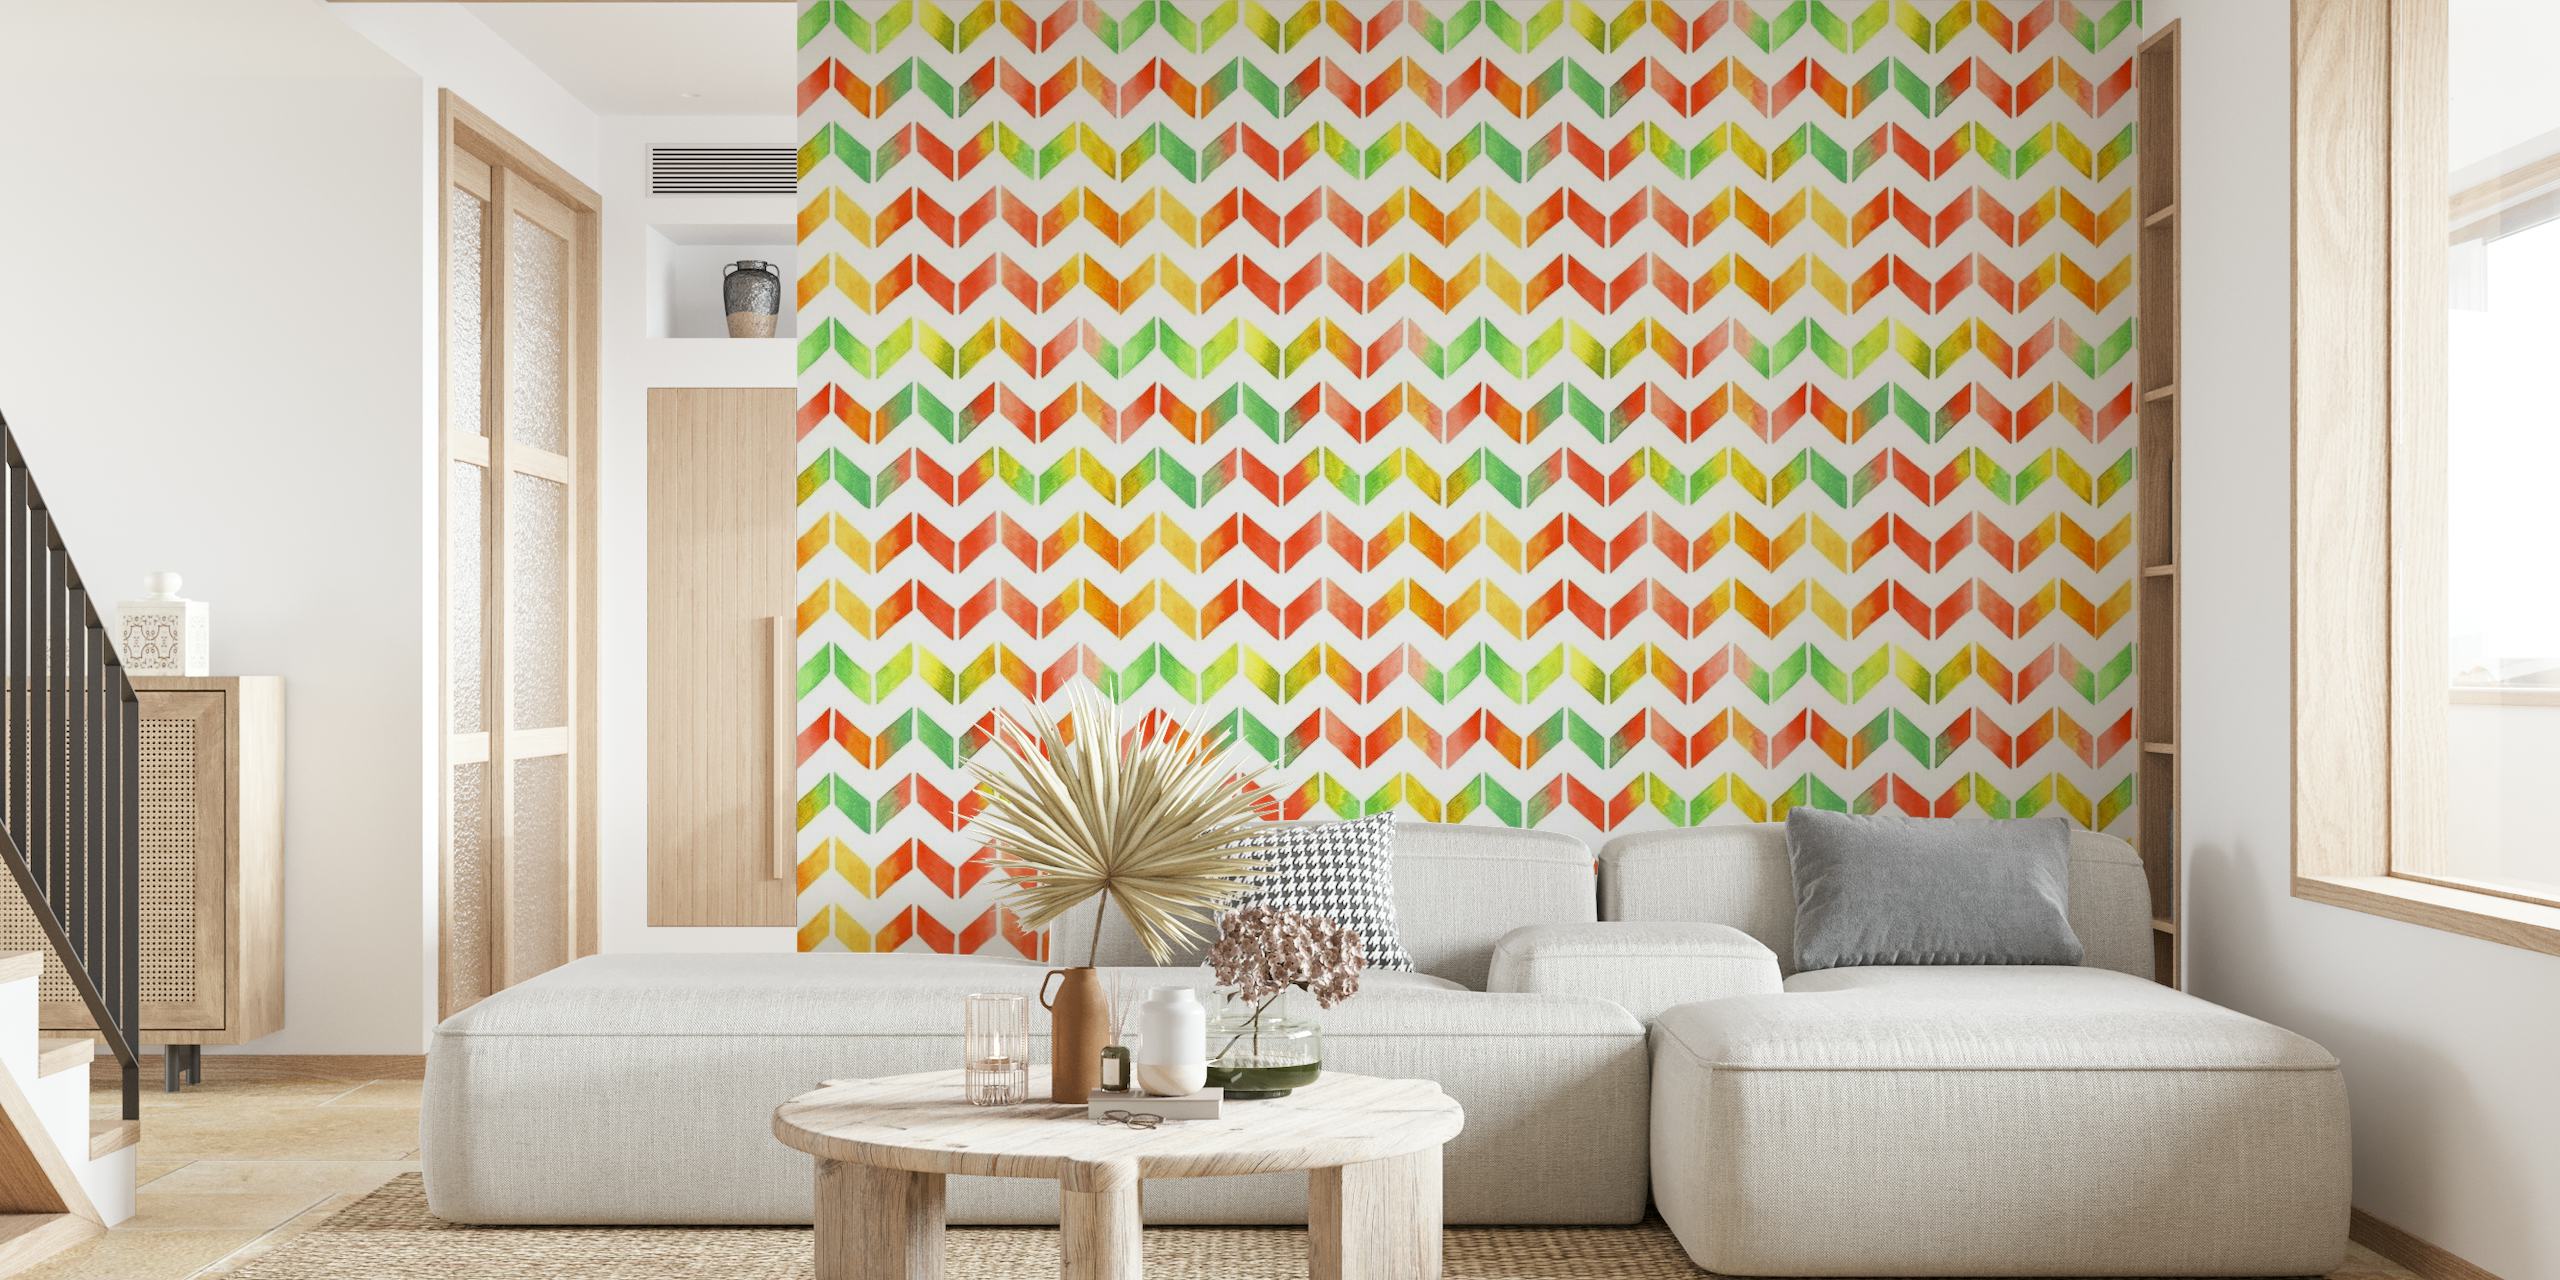 Fotomural de pared con estampado de zigzag moderno de acuarela colorida para decoración del hogar.